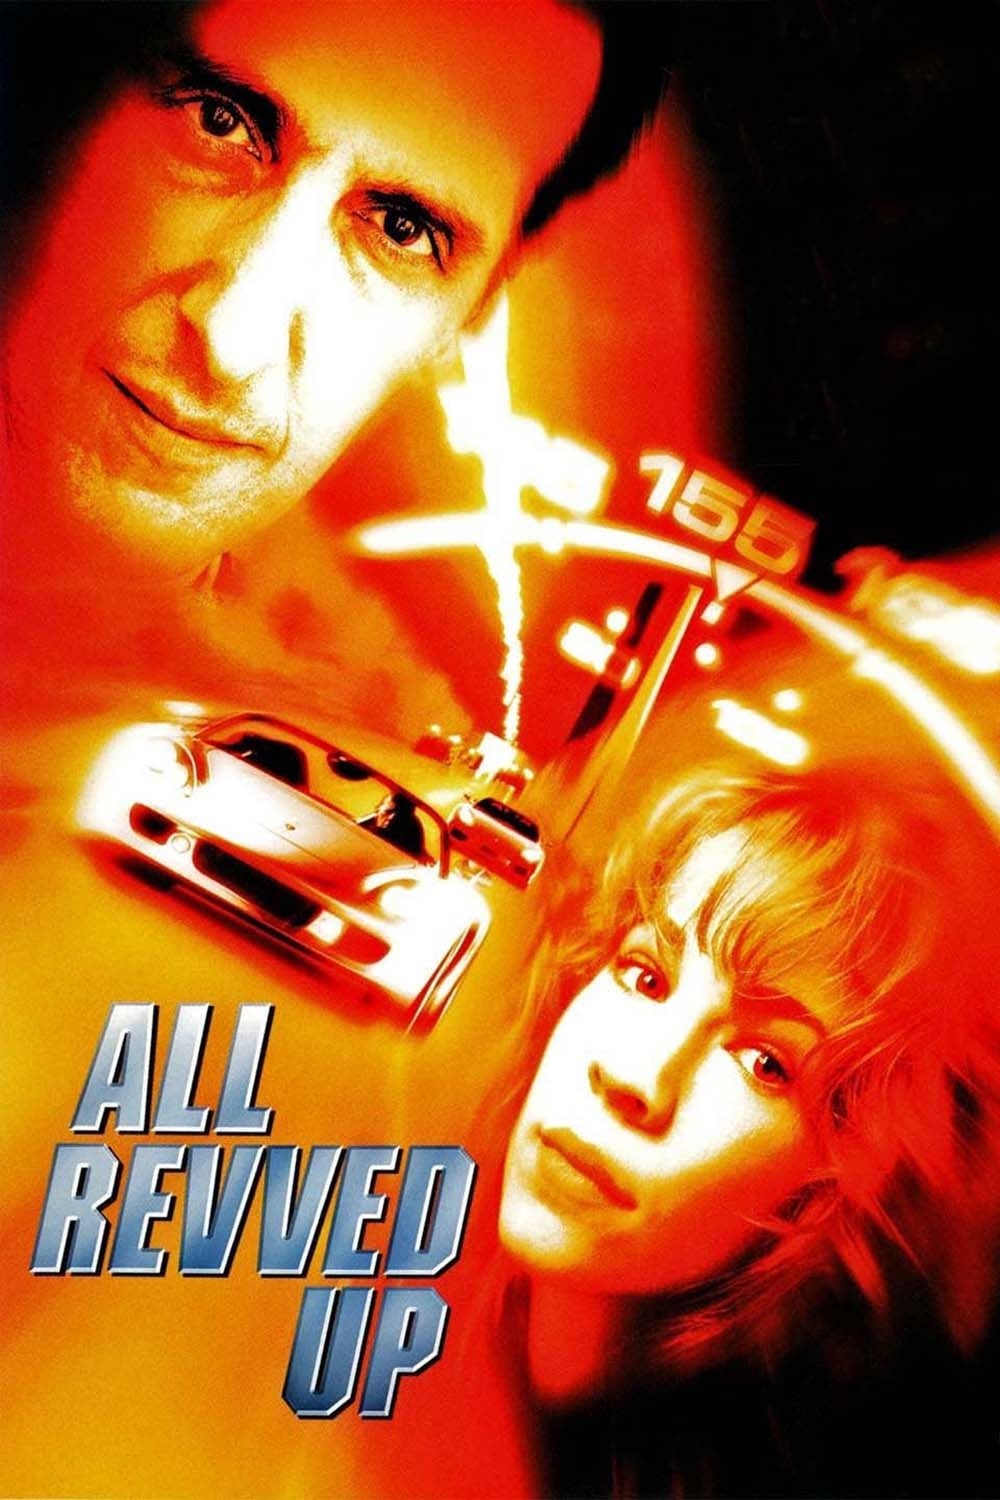 All Revved Up (1998)